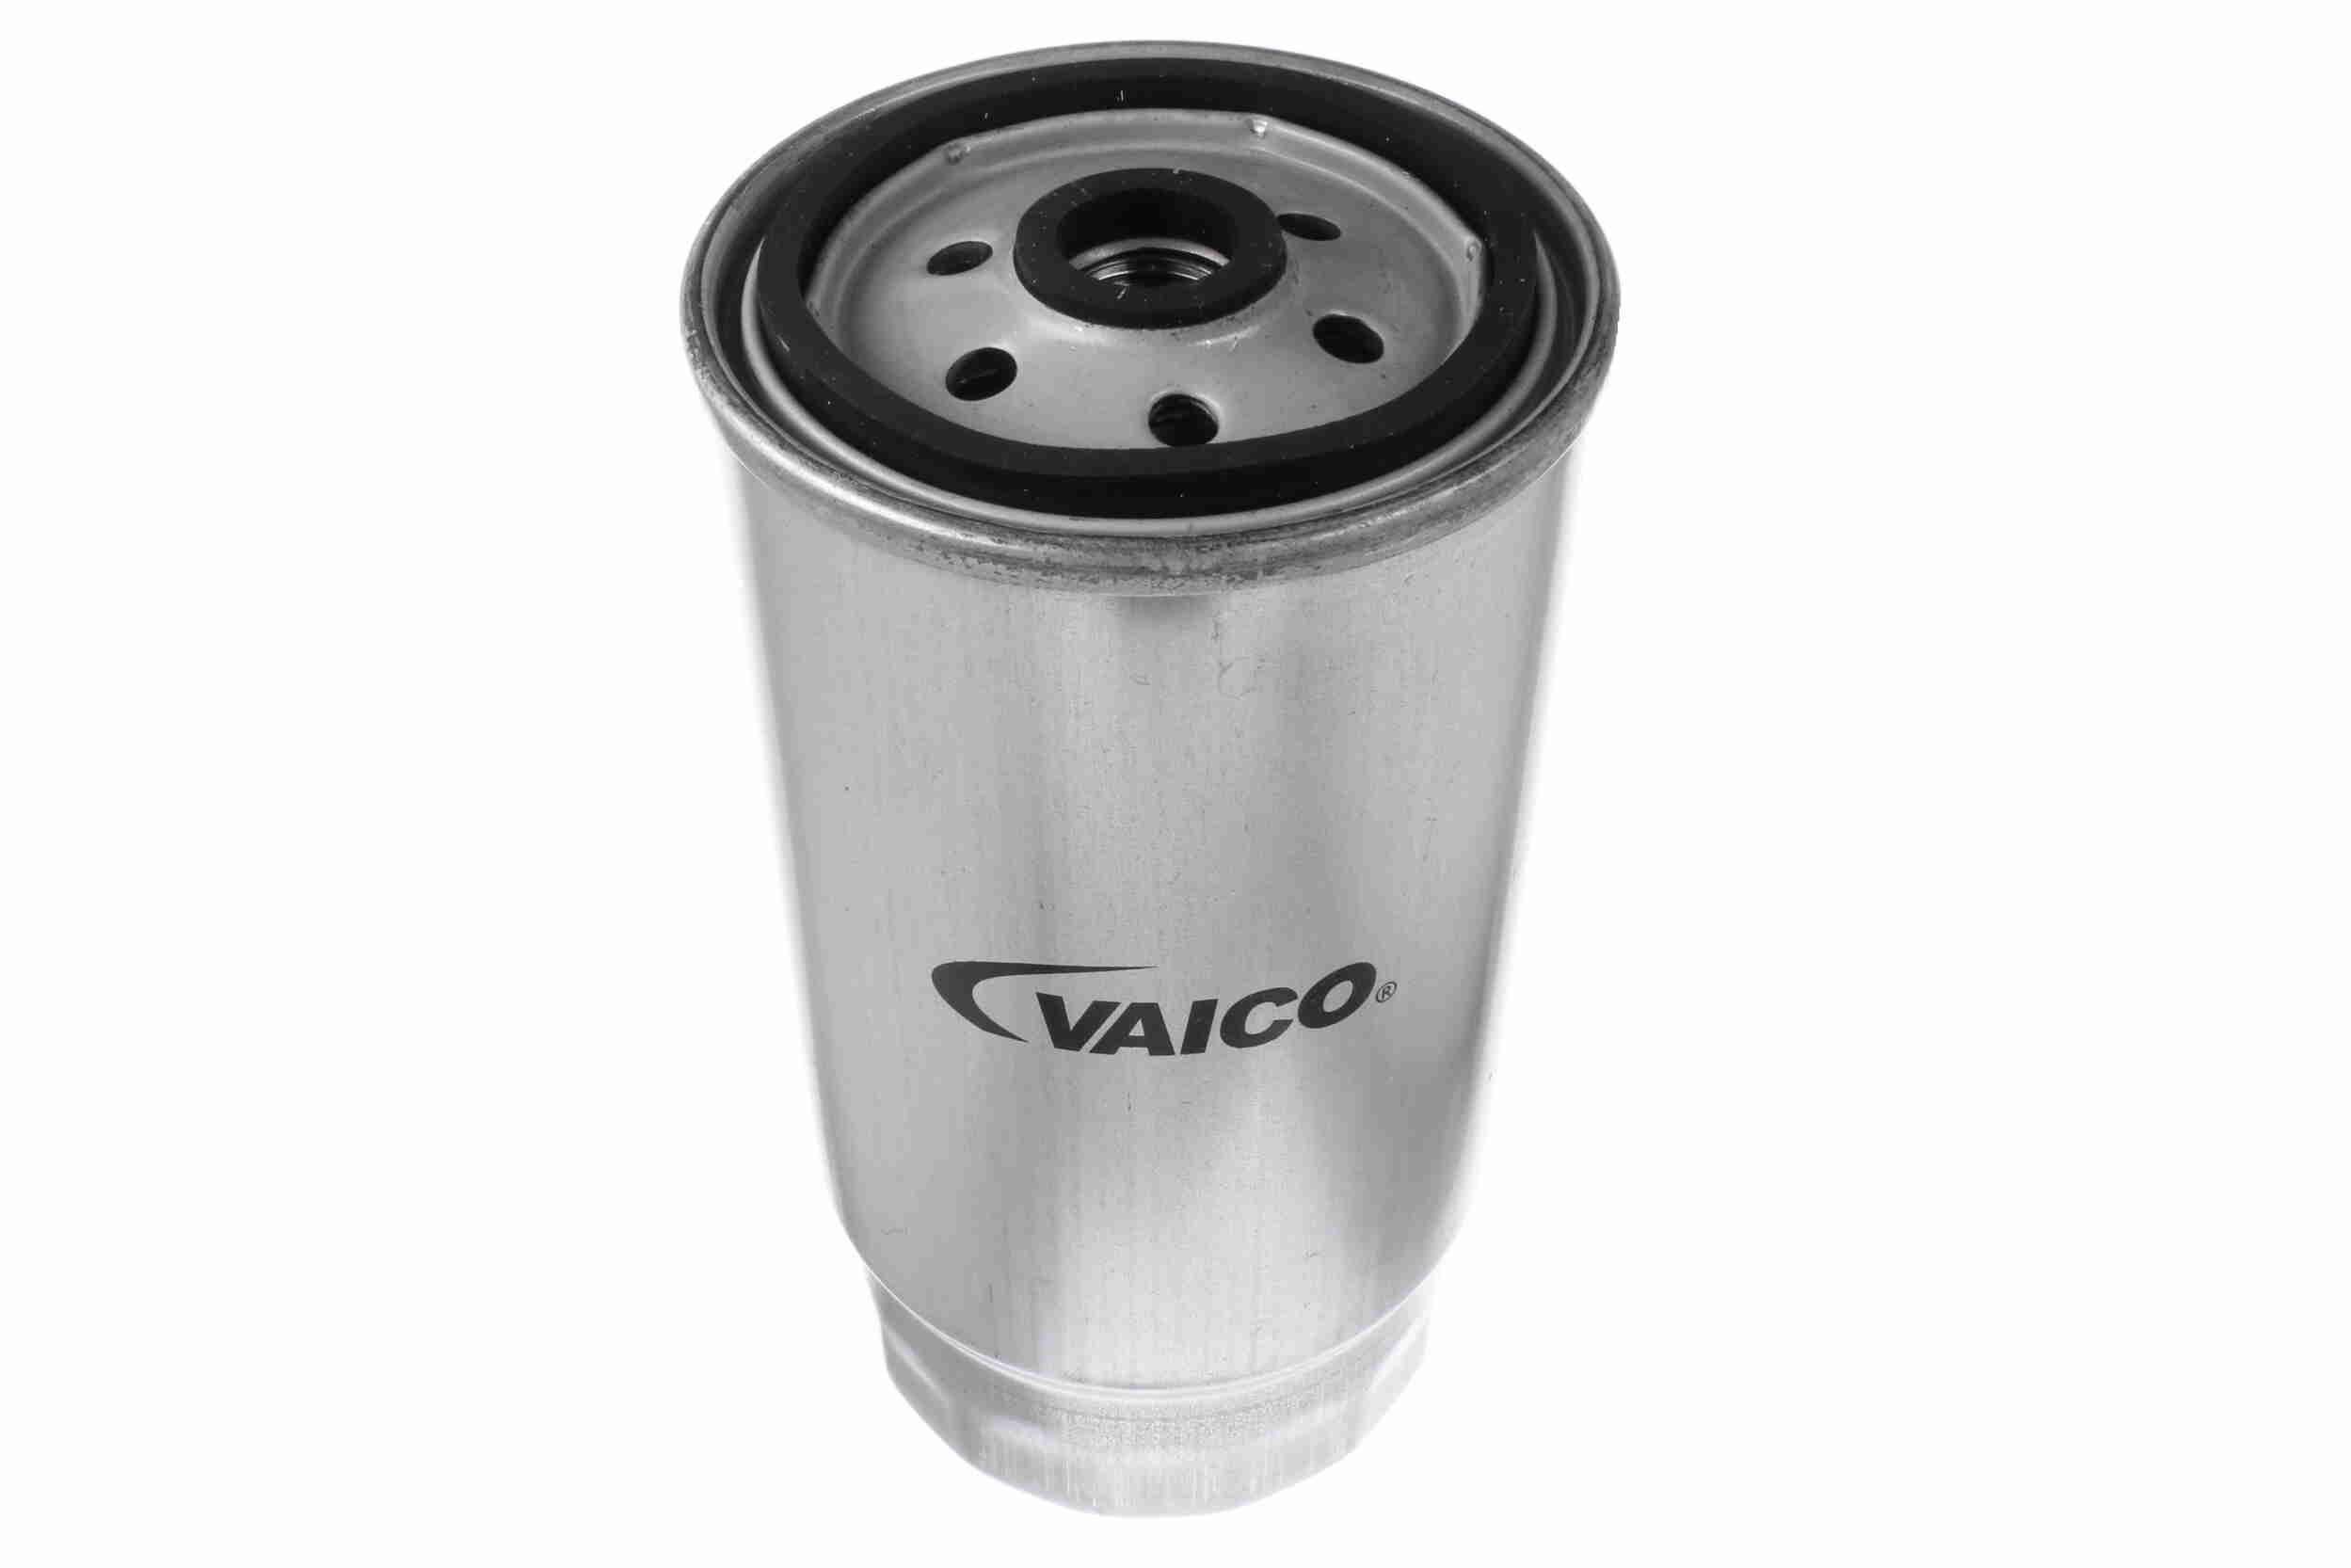 VAICO Brændstoffilter Land Rover V20-0627 af original kvalitet